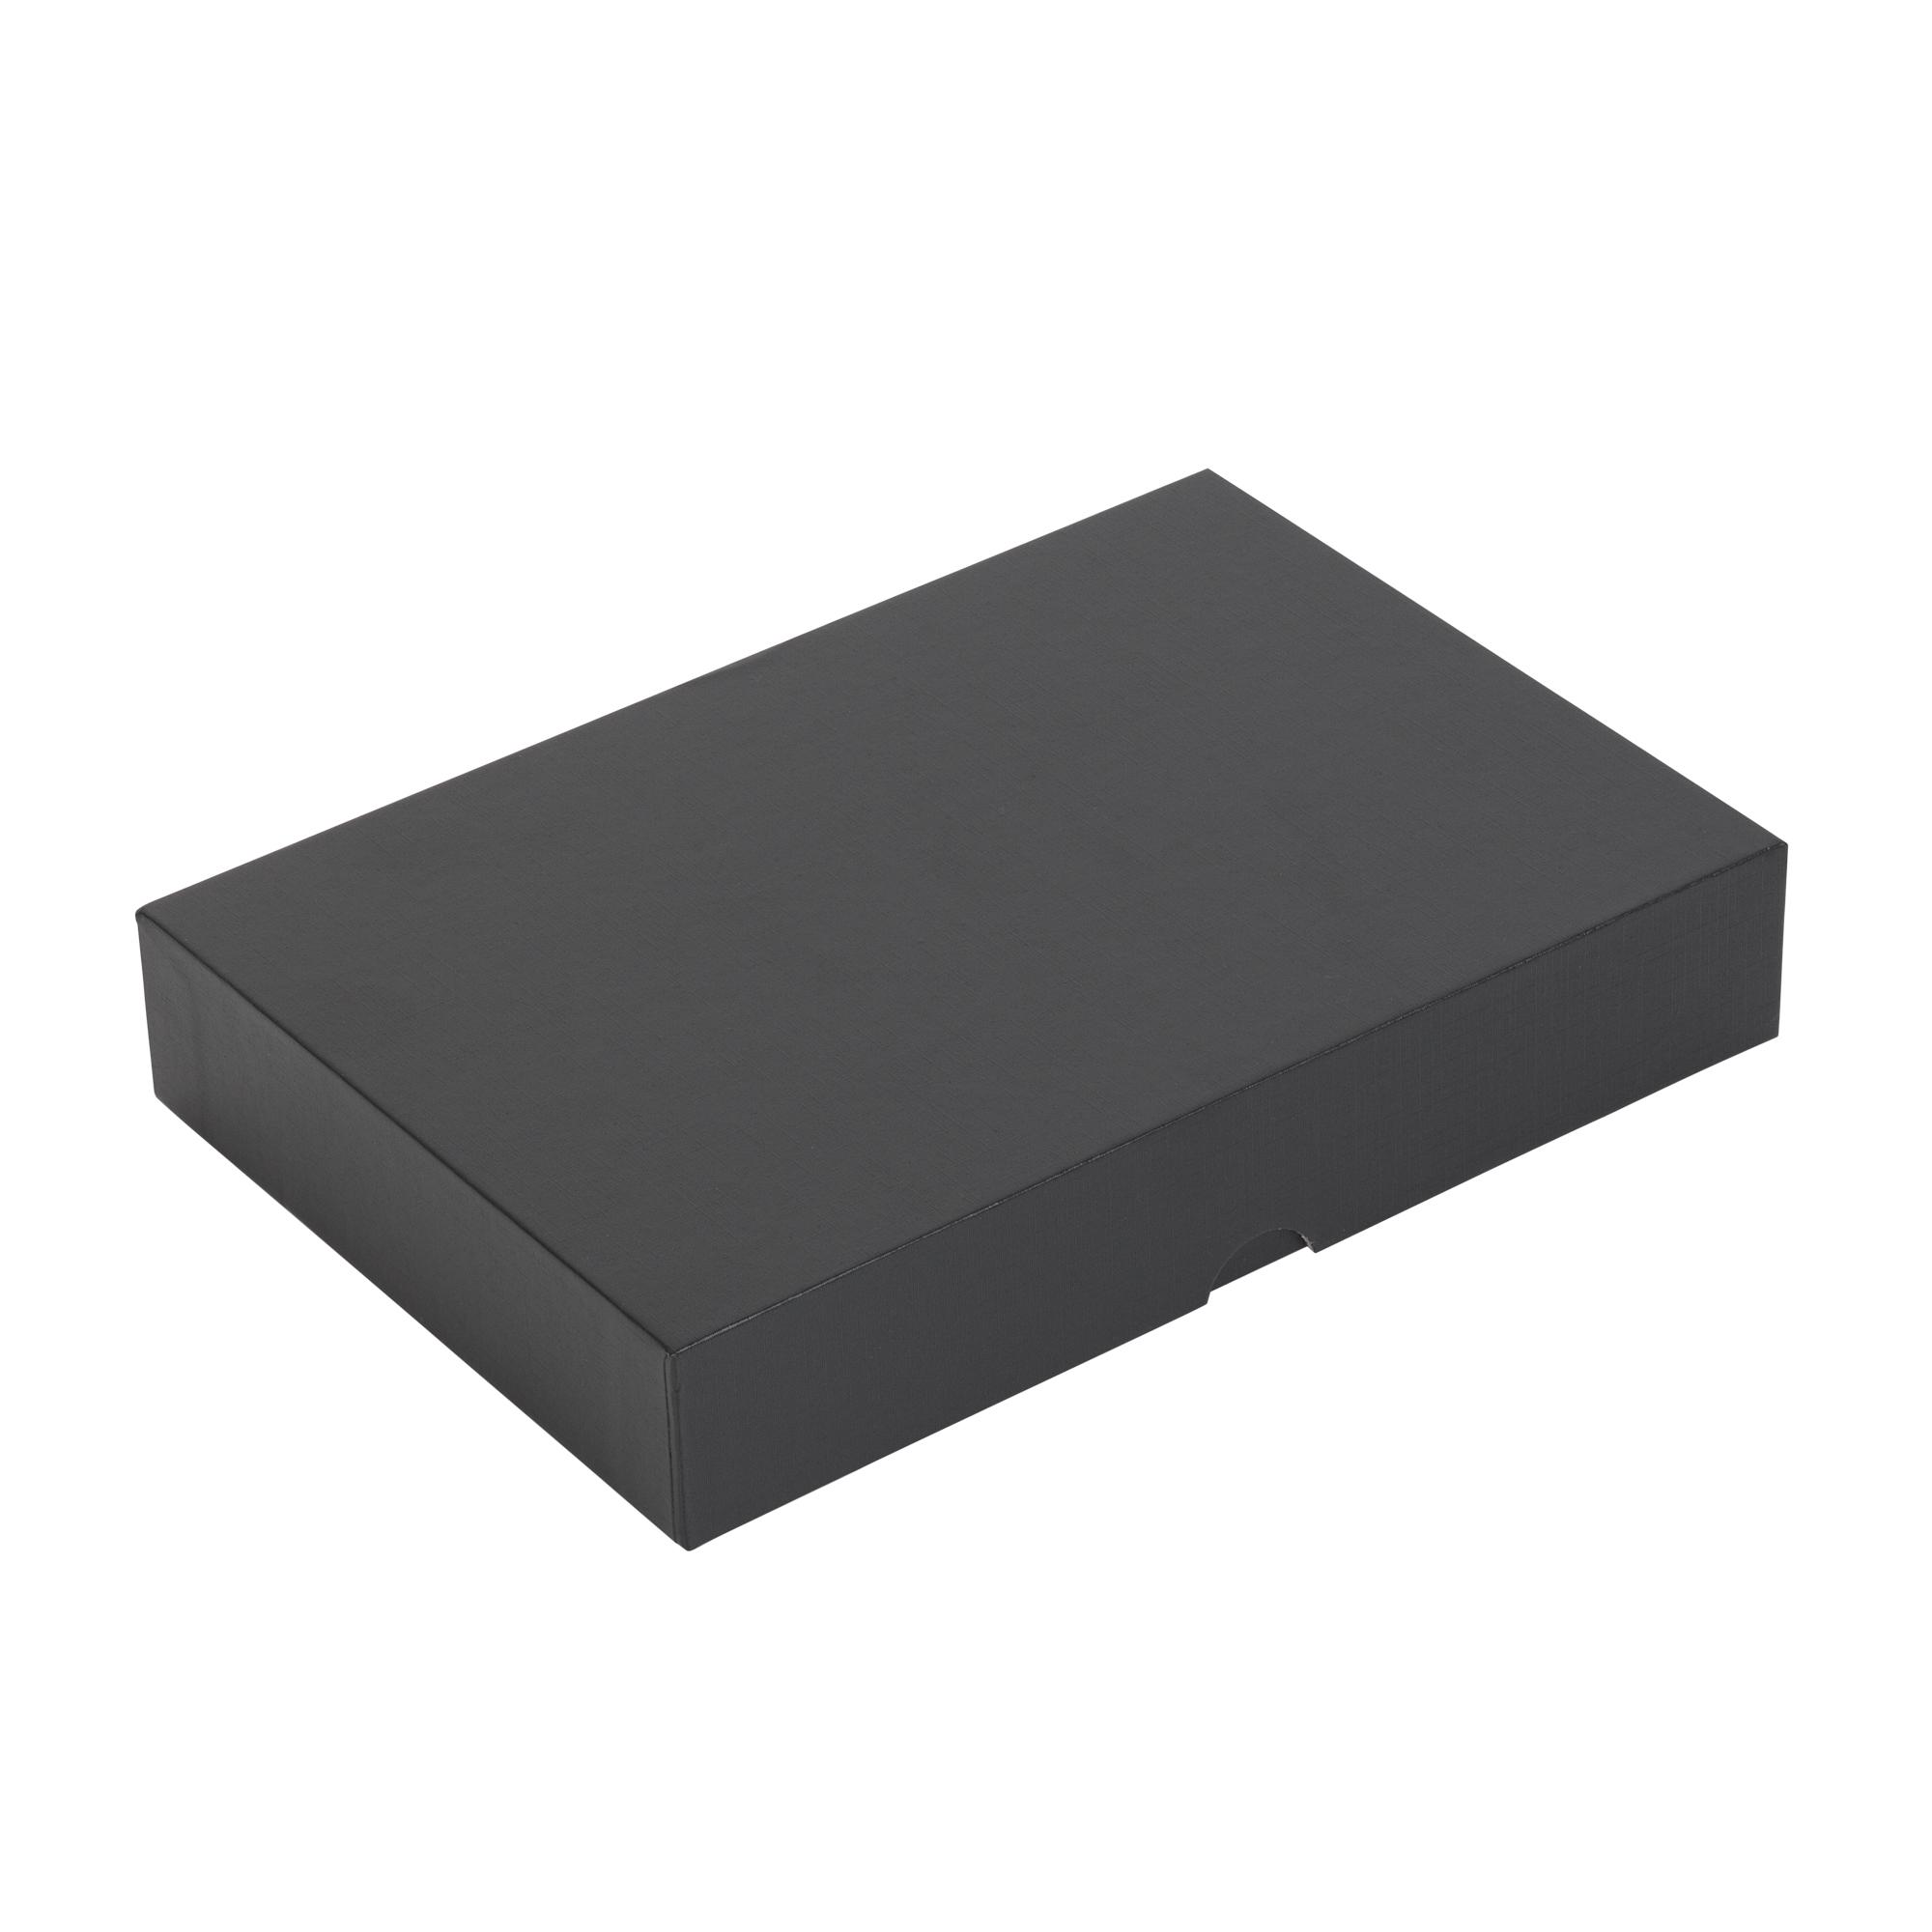 Набор "Камень" на 3 предмета, 4000 mAh /32Gb, с покрытием soft grip, цвет черный, фото 2